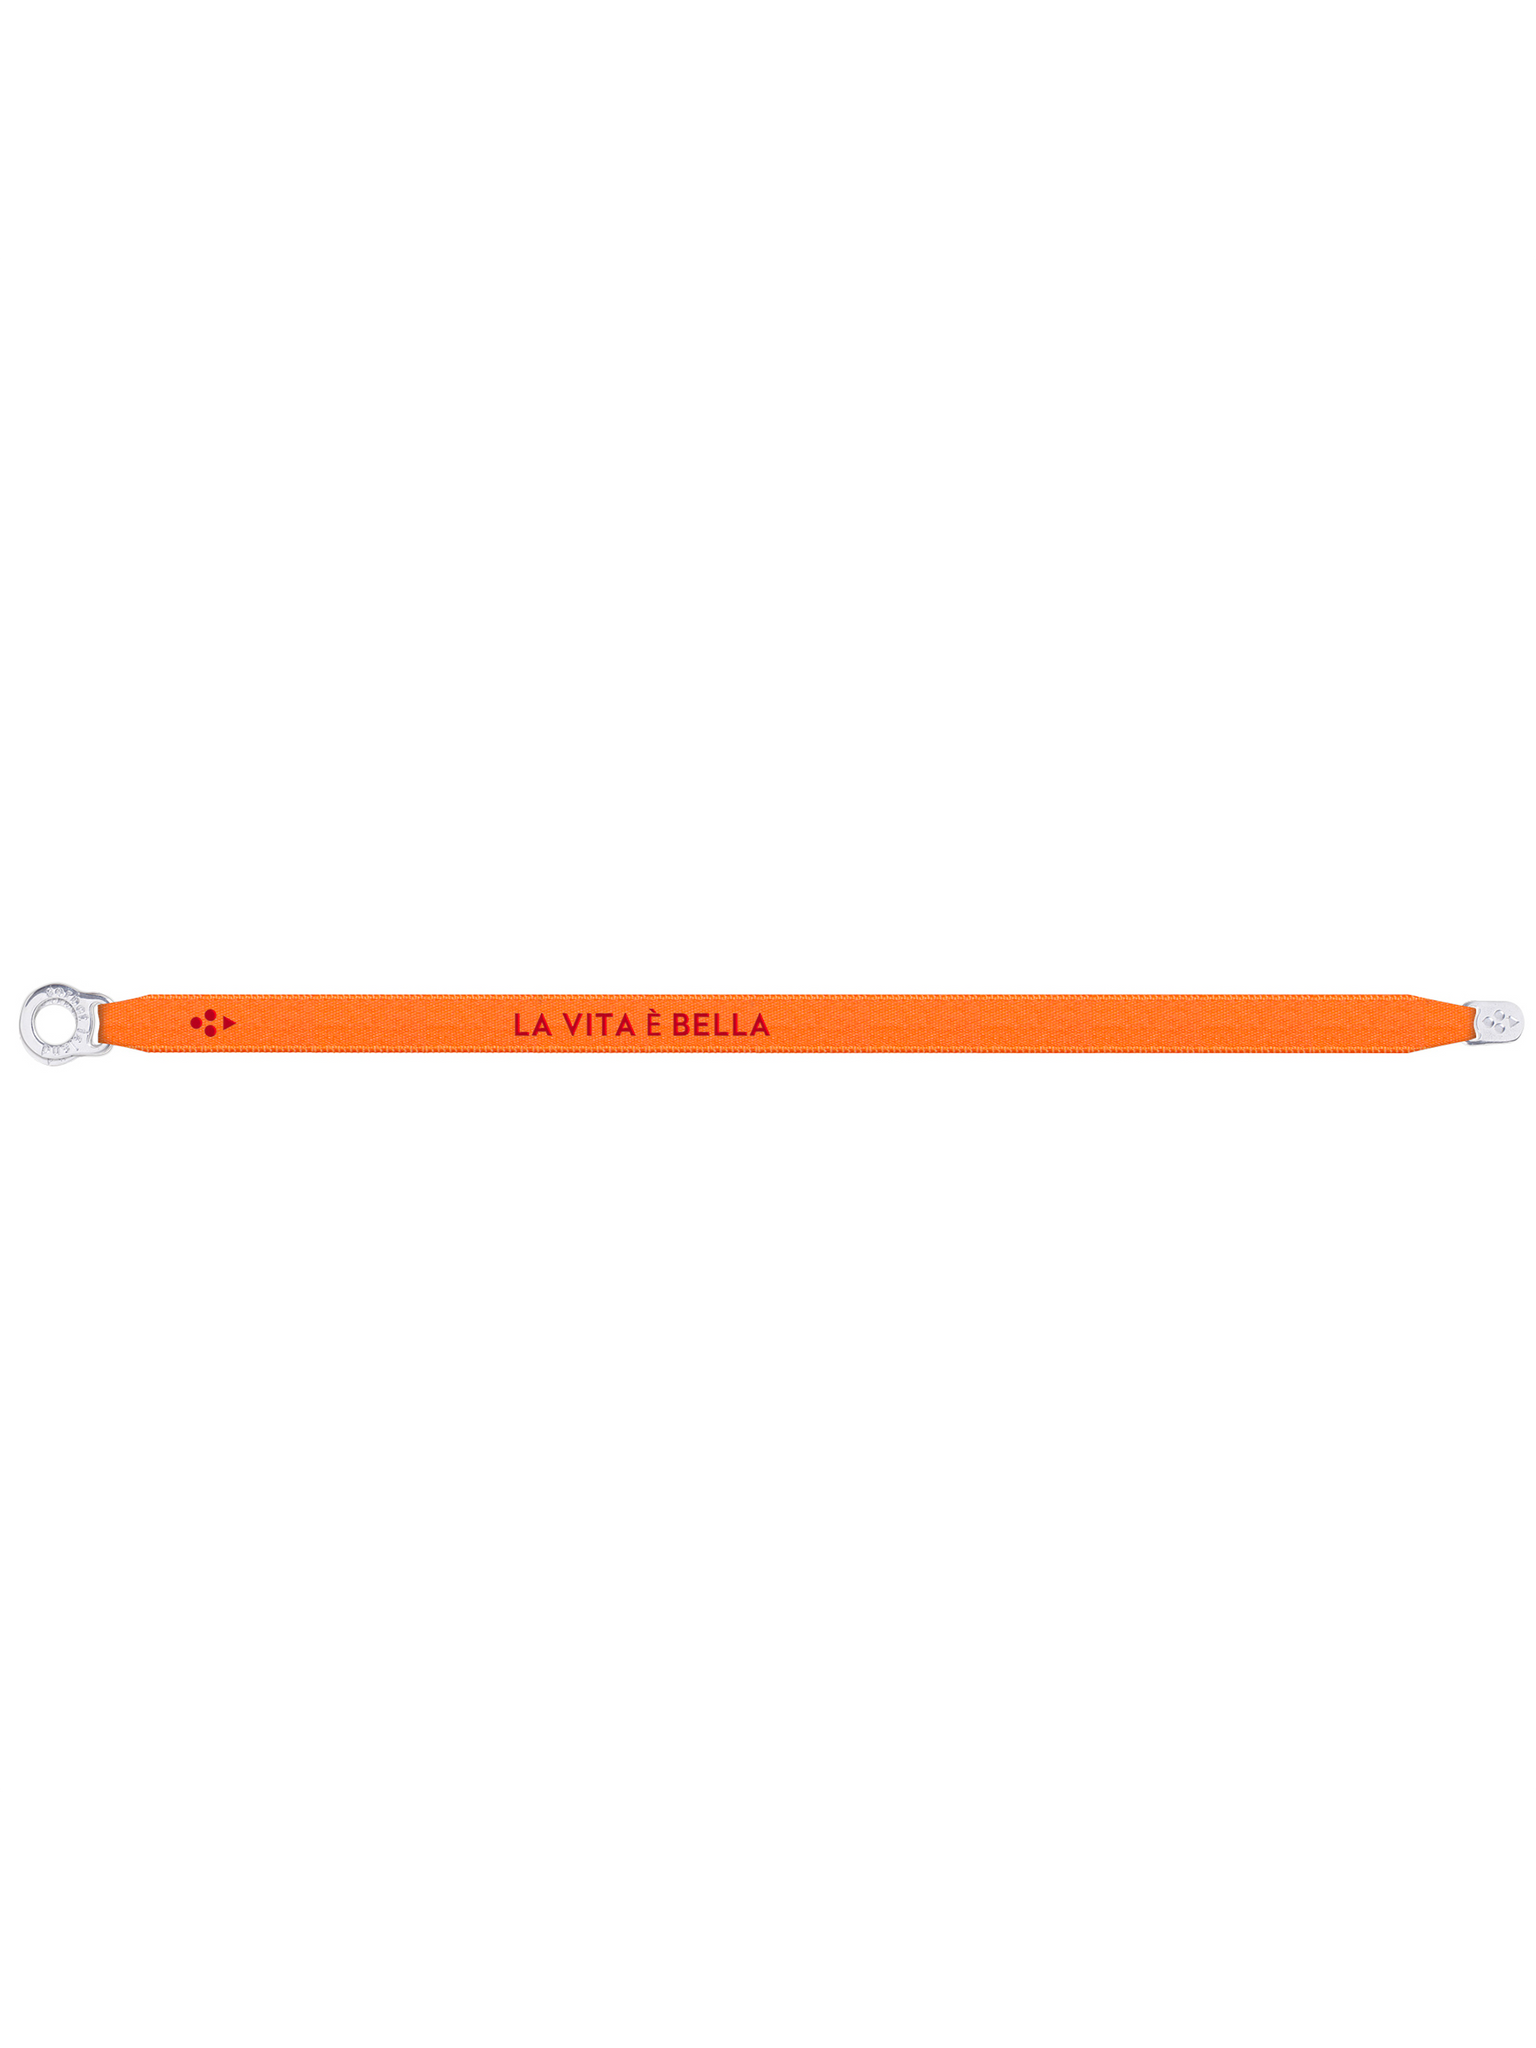 Satin Bracelet "LA VITA E' BELLA" Neon Light Orange